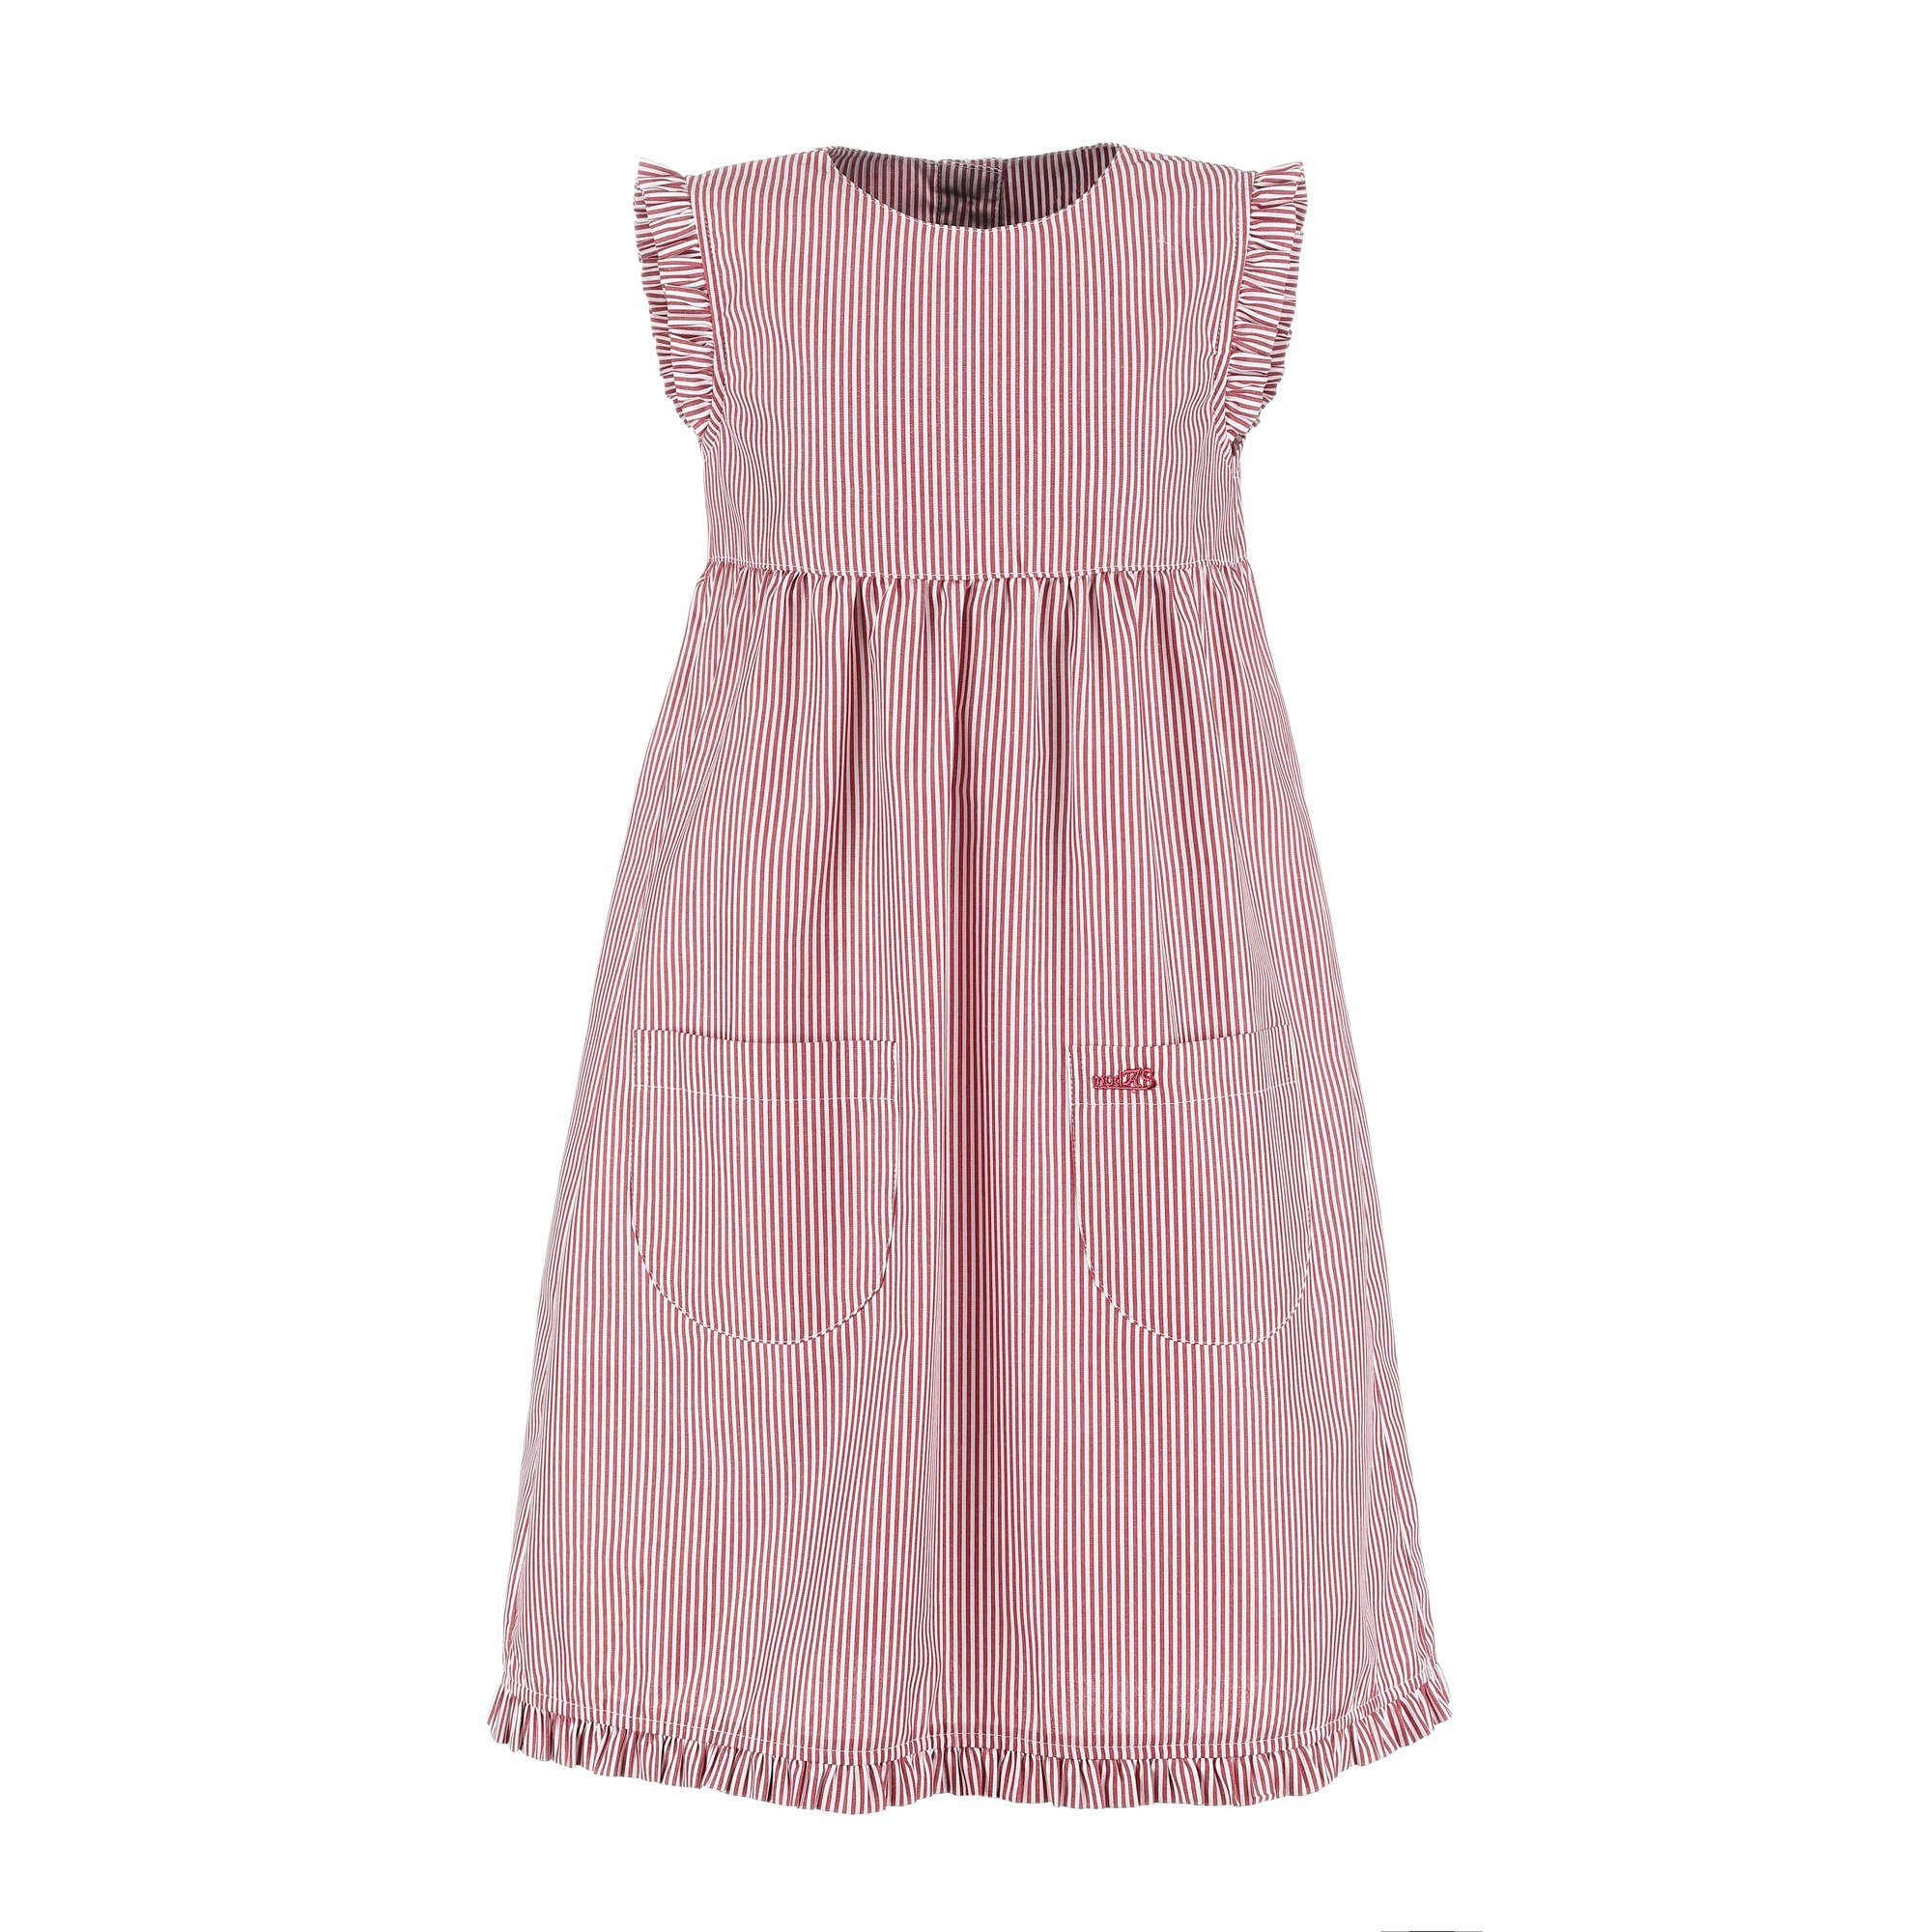 modAS Sommerkleid Kinder Kleid gestreift rot/weiß mit Streifen Mädchenkleid (023) - gestreift Rüschen mit